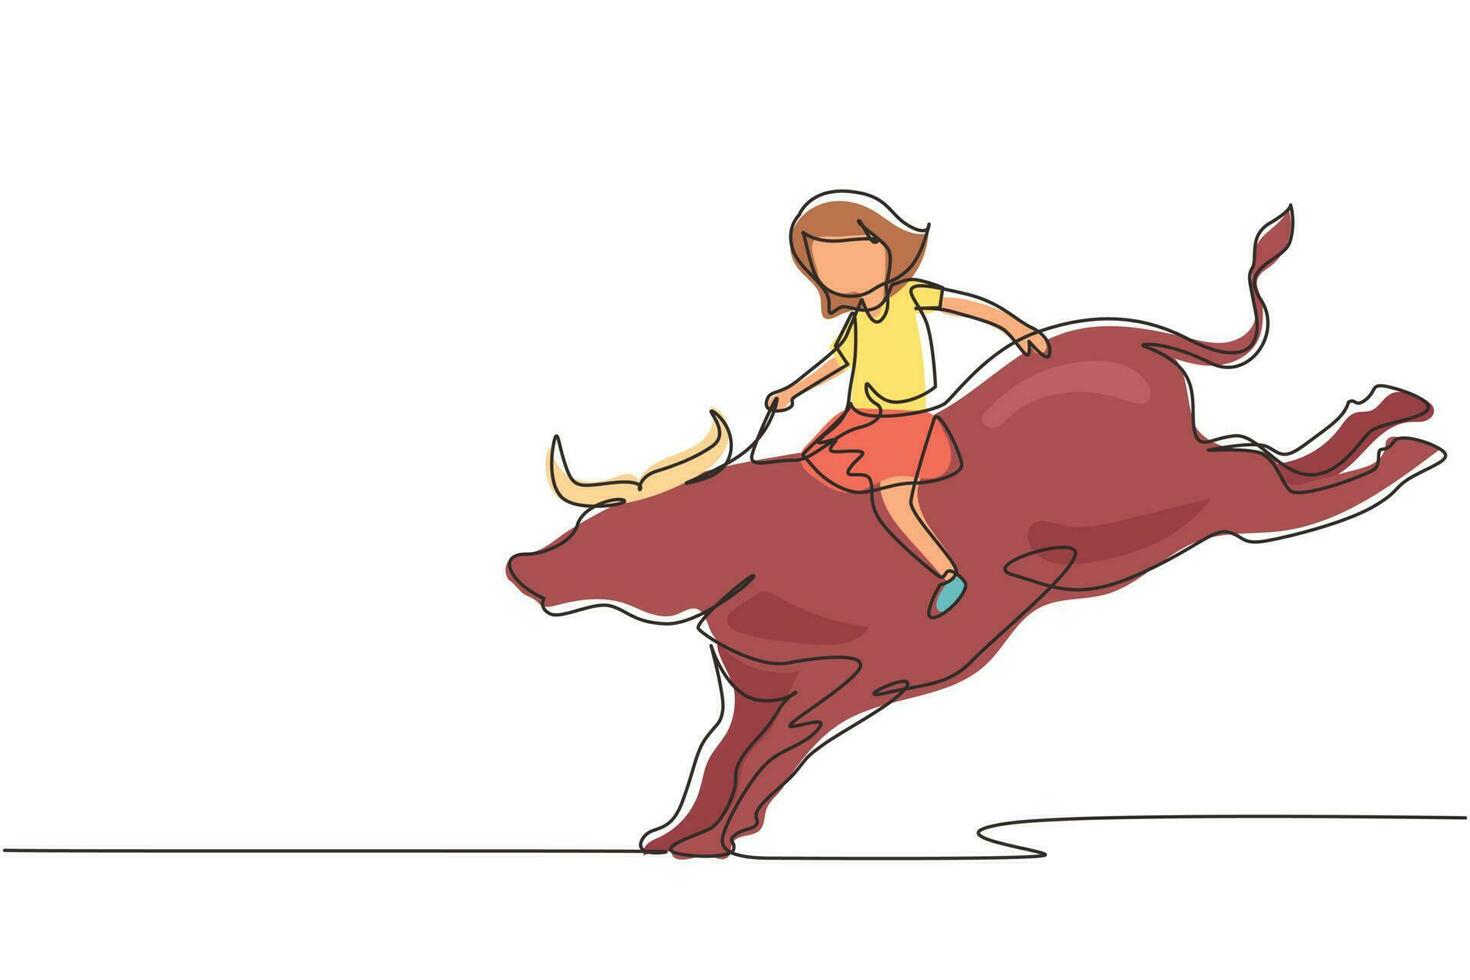 kontinuerlig en rad ritning glad söt unge flicka rider tjur. barn sitter på baksidan tjur med sadel i cowboy ranch. barn som lär sig rida tjur. enda rad rita design vektorgrafisk illustration vektor